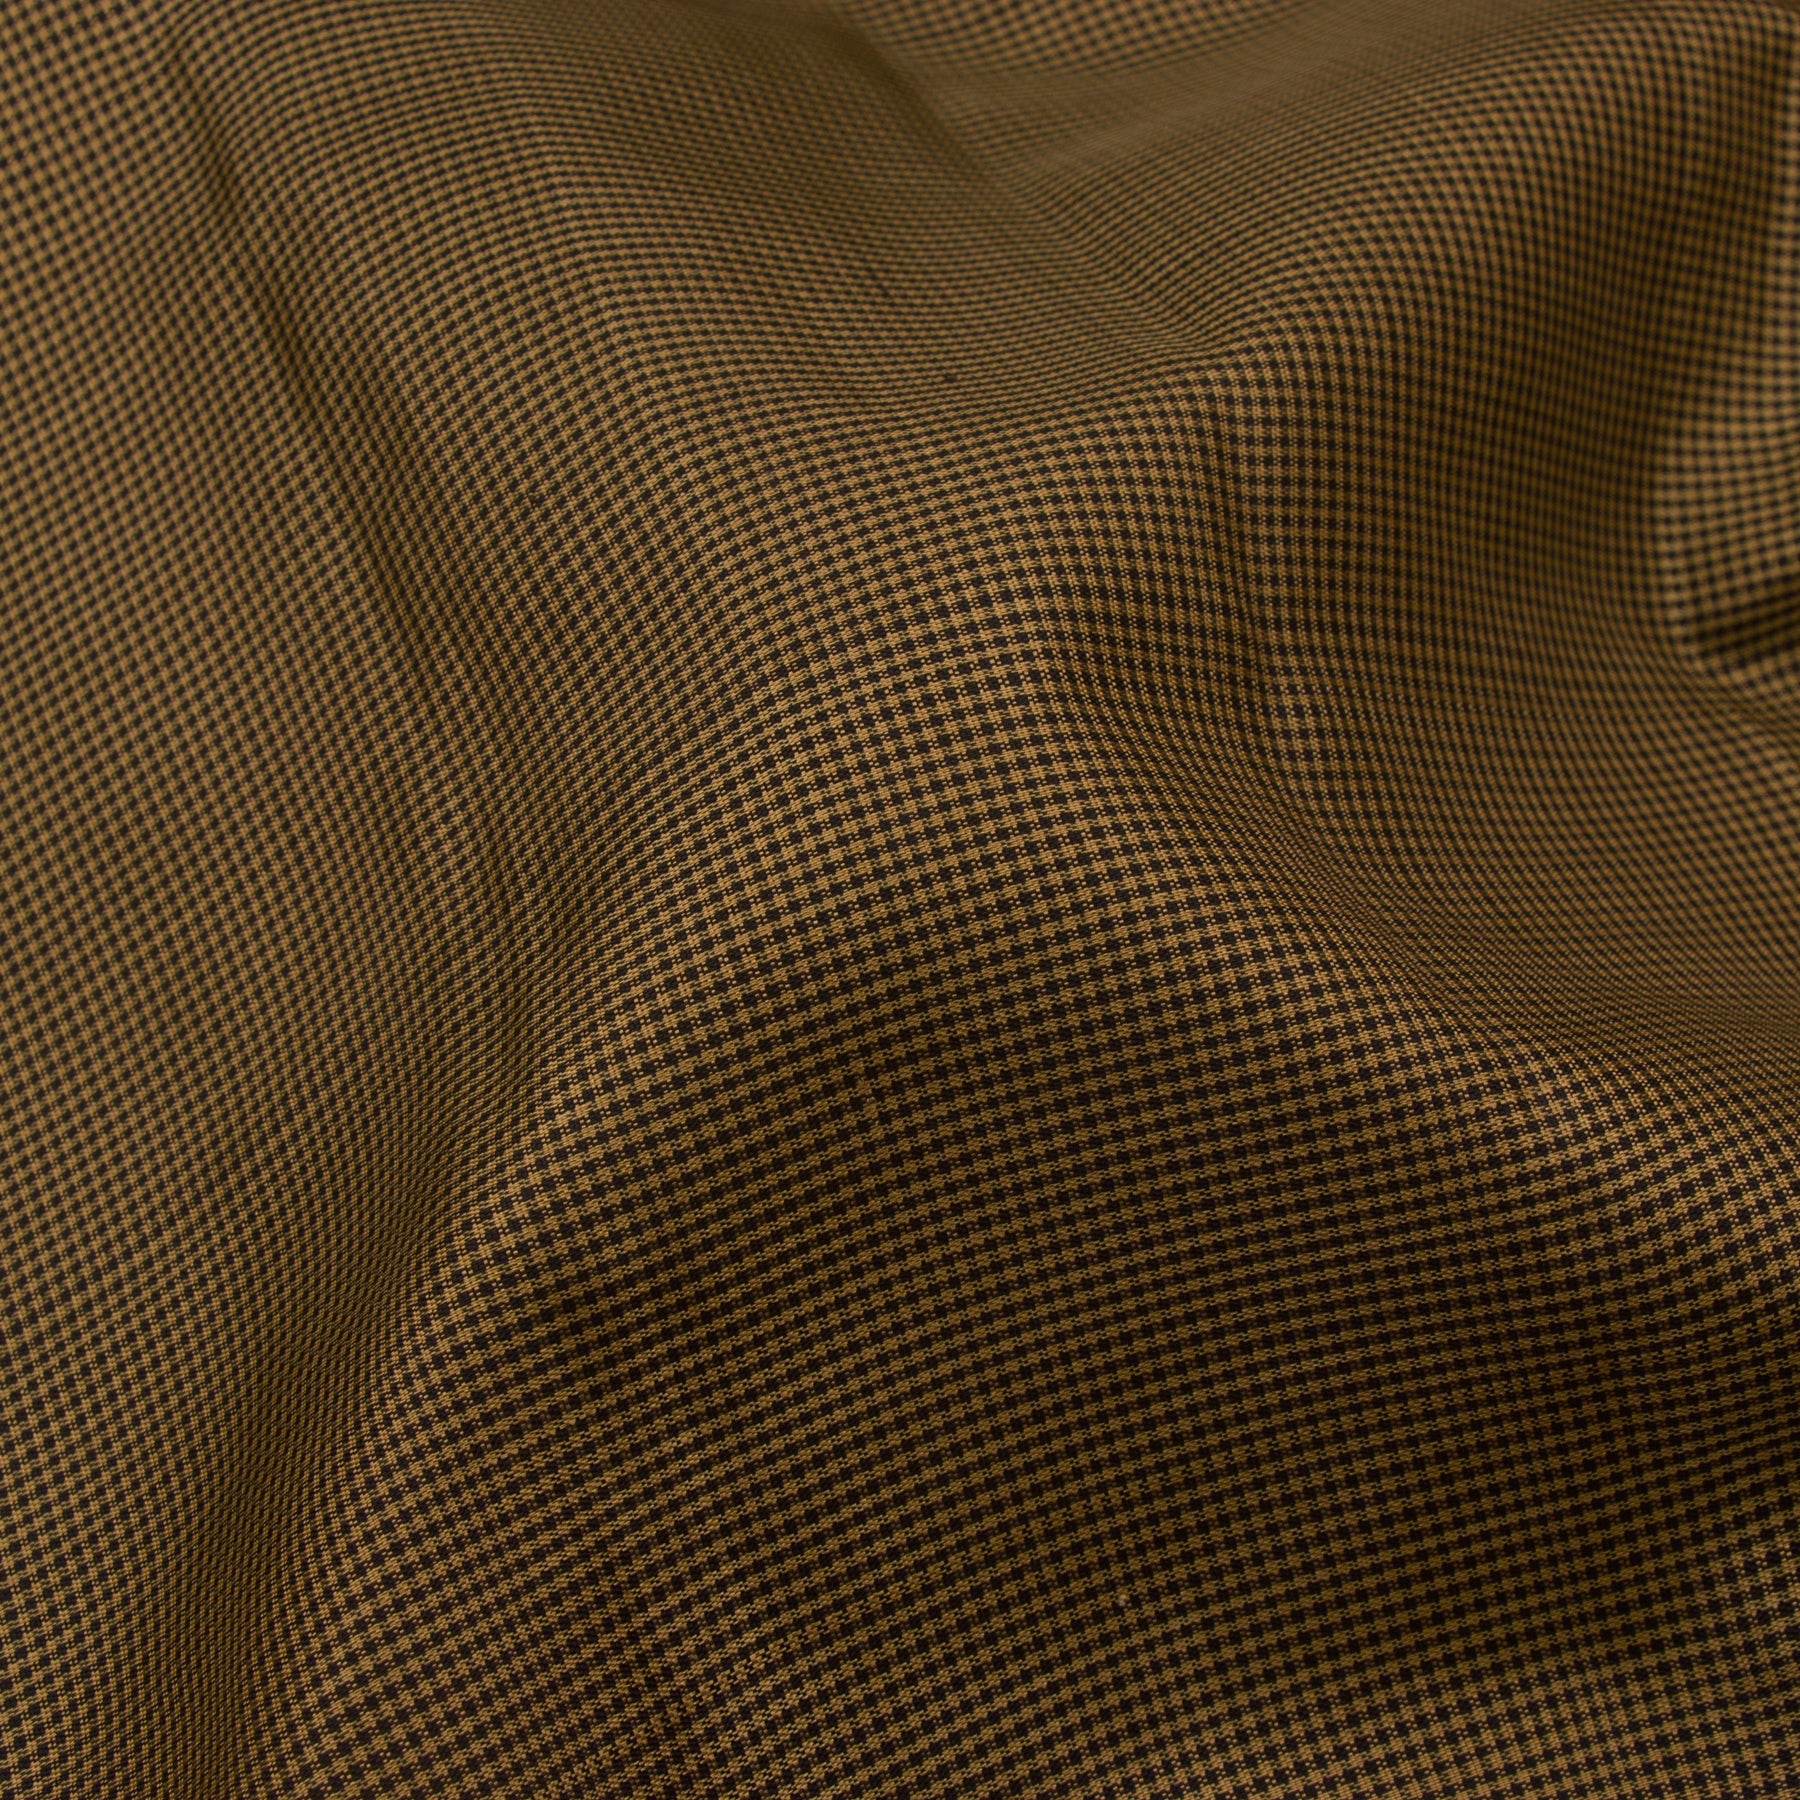 Kanakavalli Kanjivaram Silk Sari 23-100-HS001-00635 - Fabric View